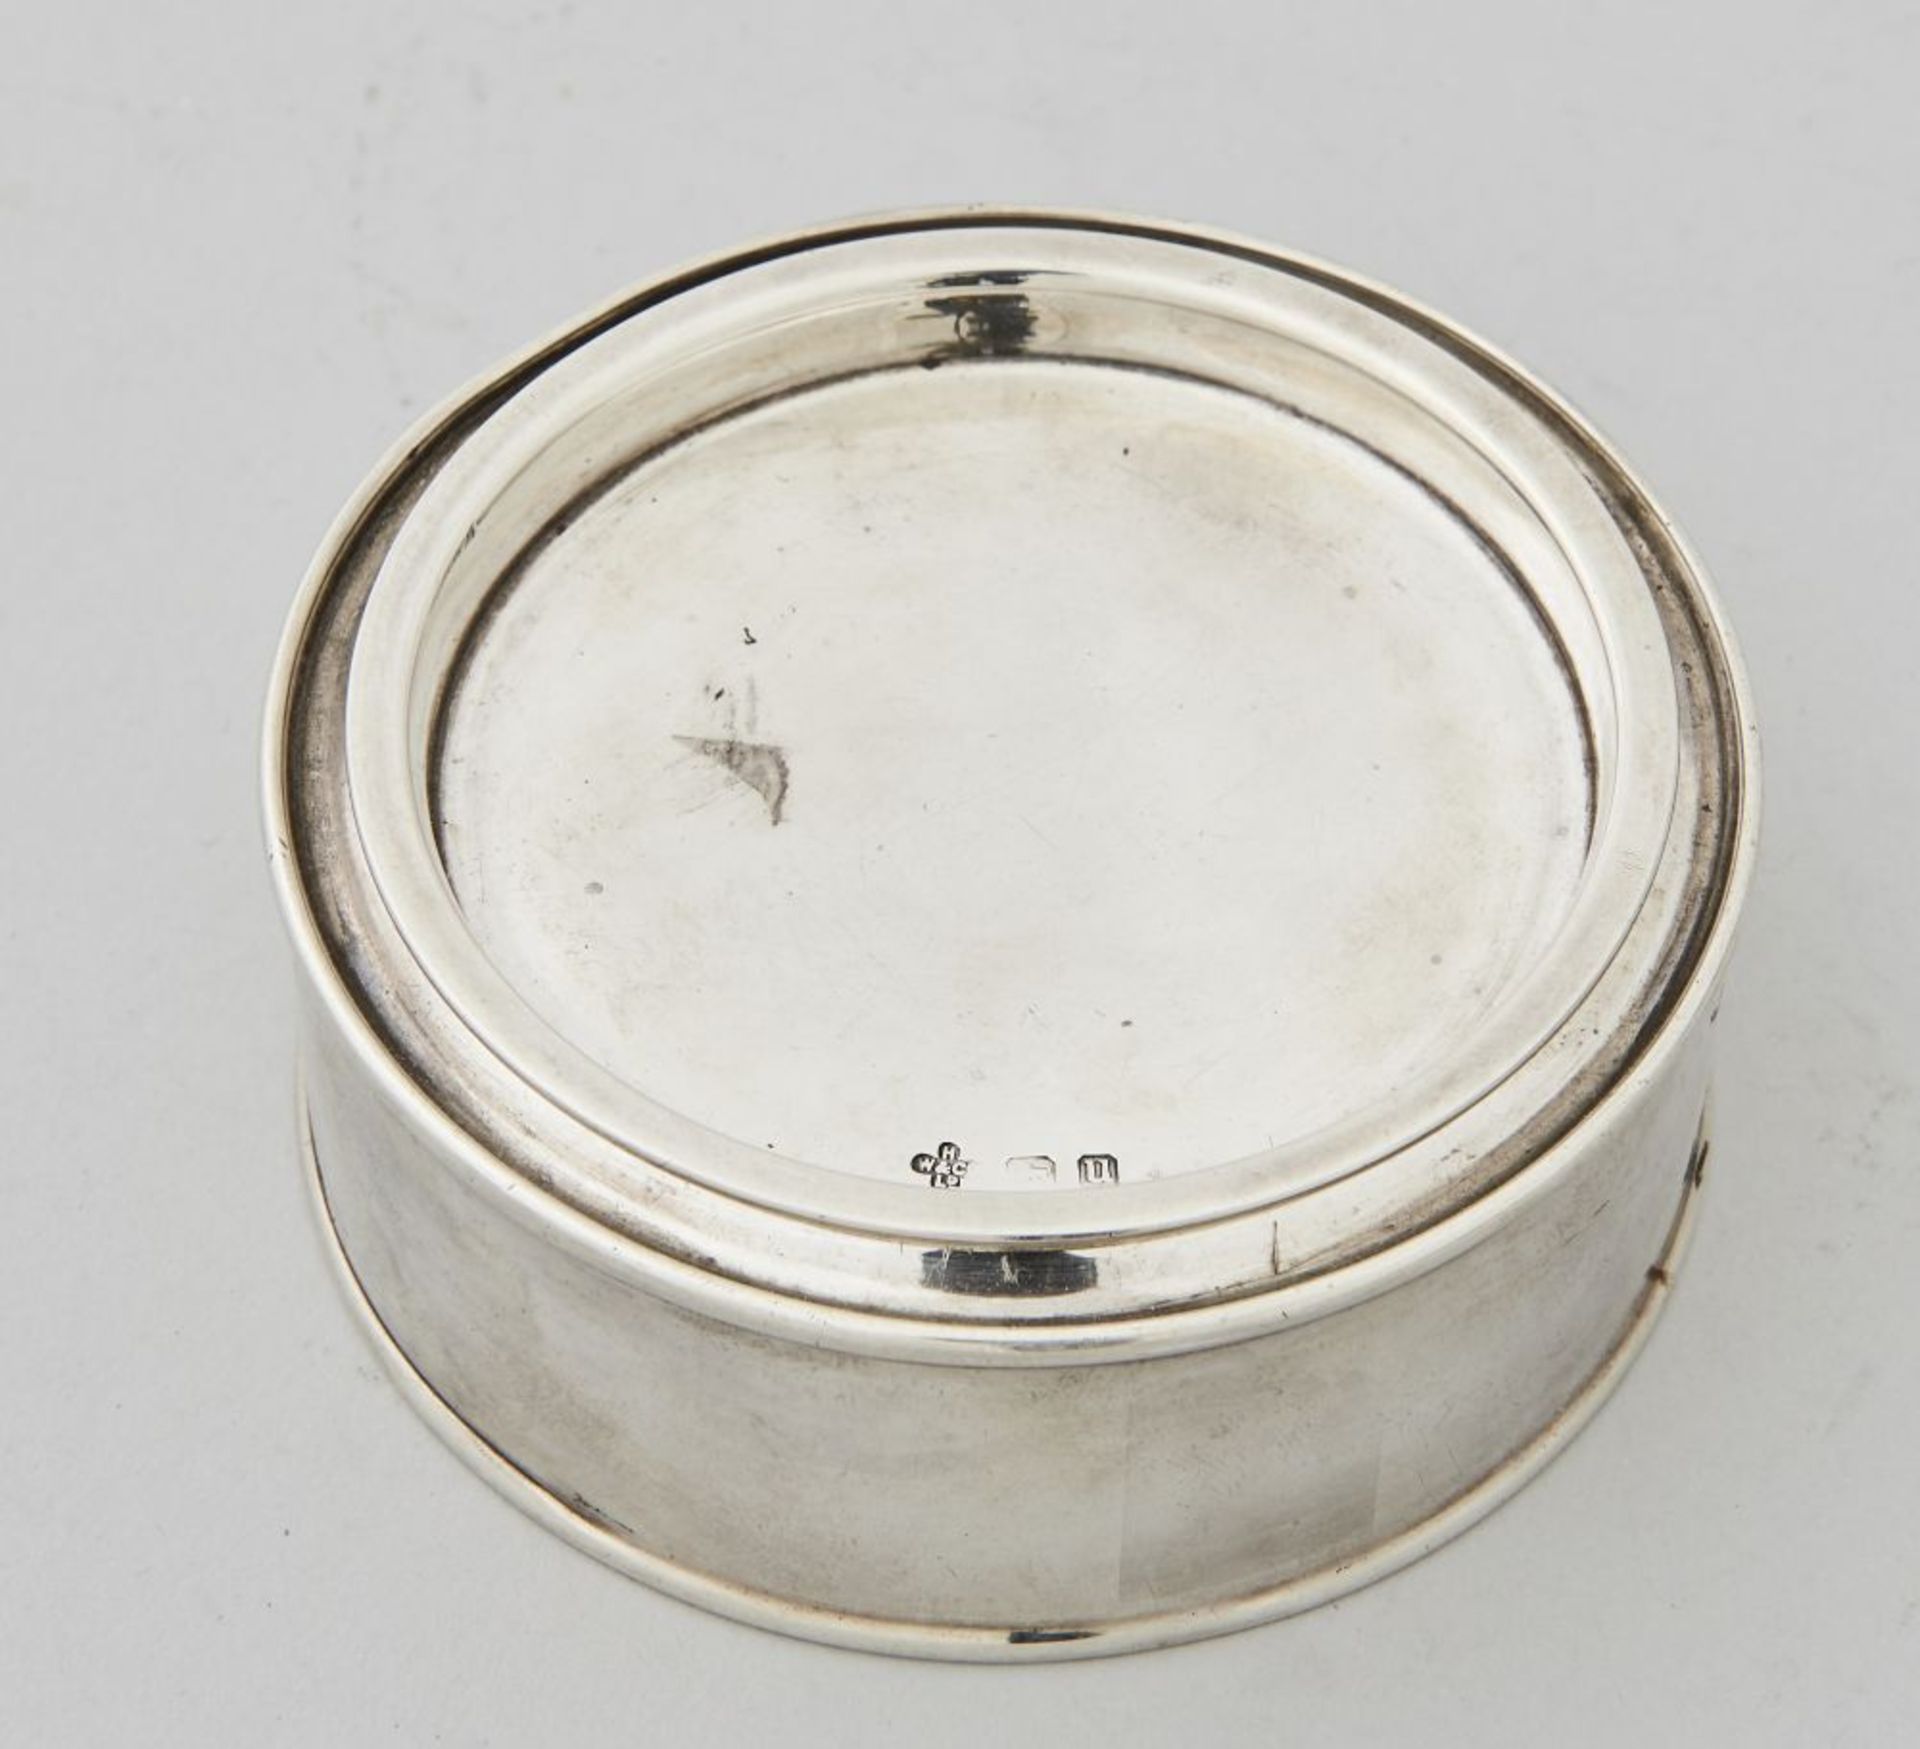 Deckeldose EnglandDose, Silber, gestempelt, 925 Sterling. Höhe 3,5 cm, Durchmesser 9,7 cm, Gewicht